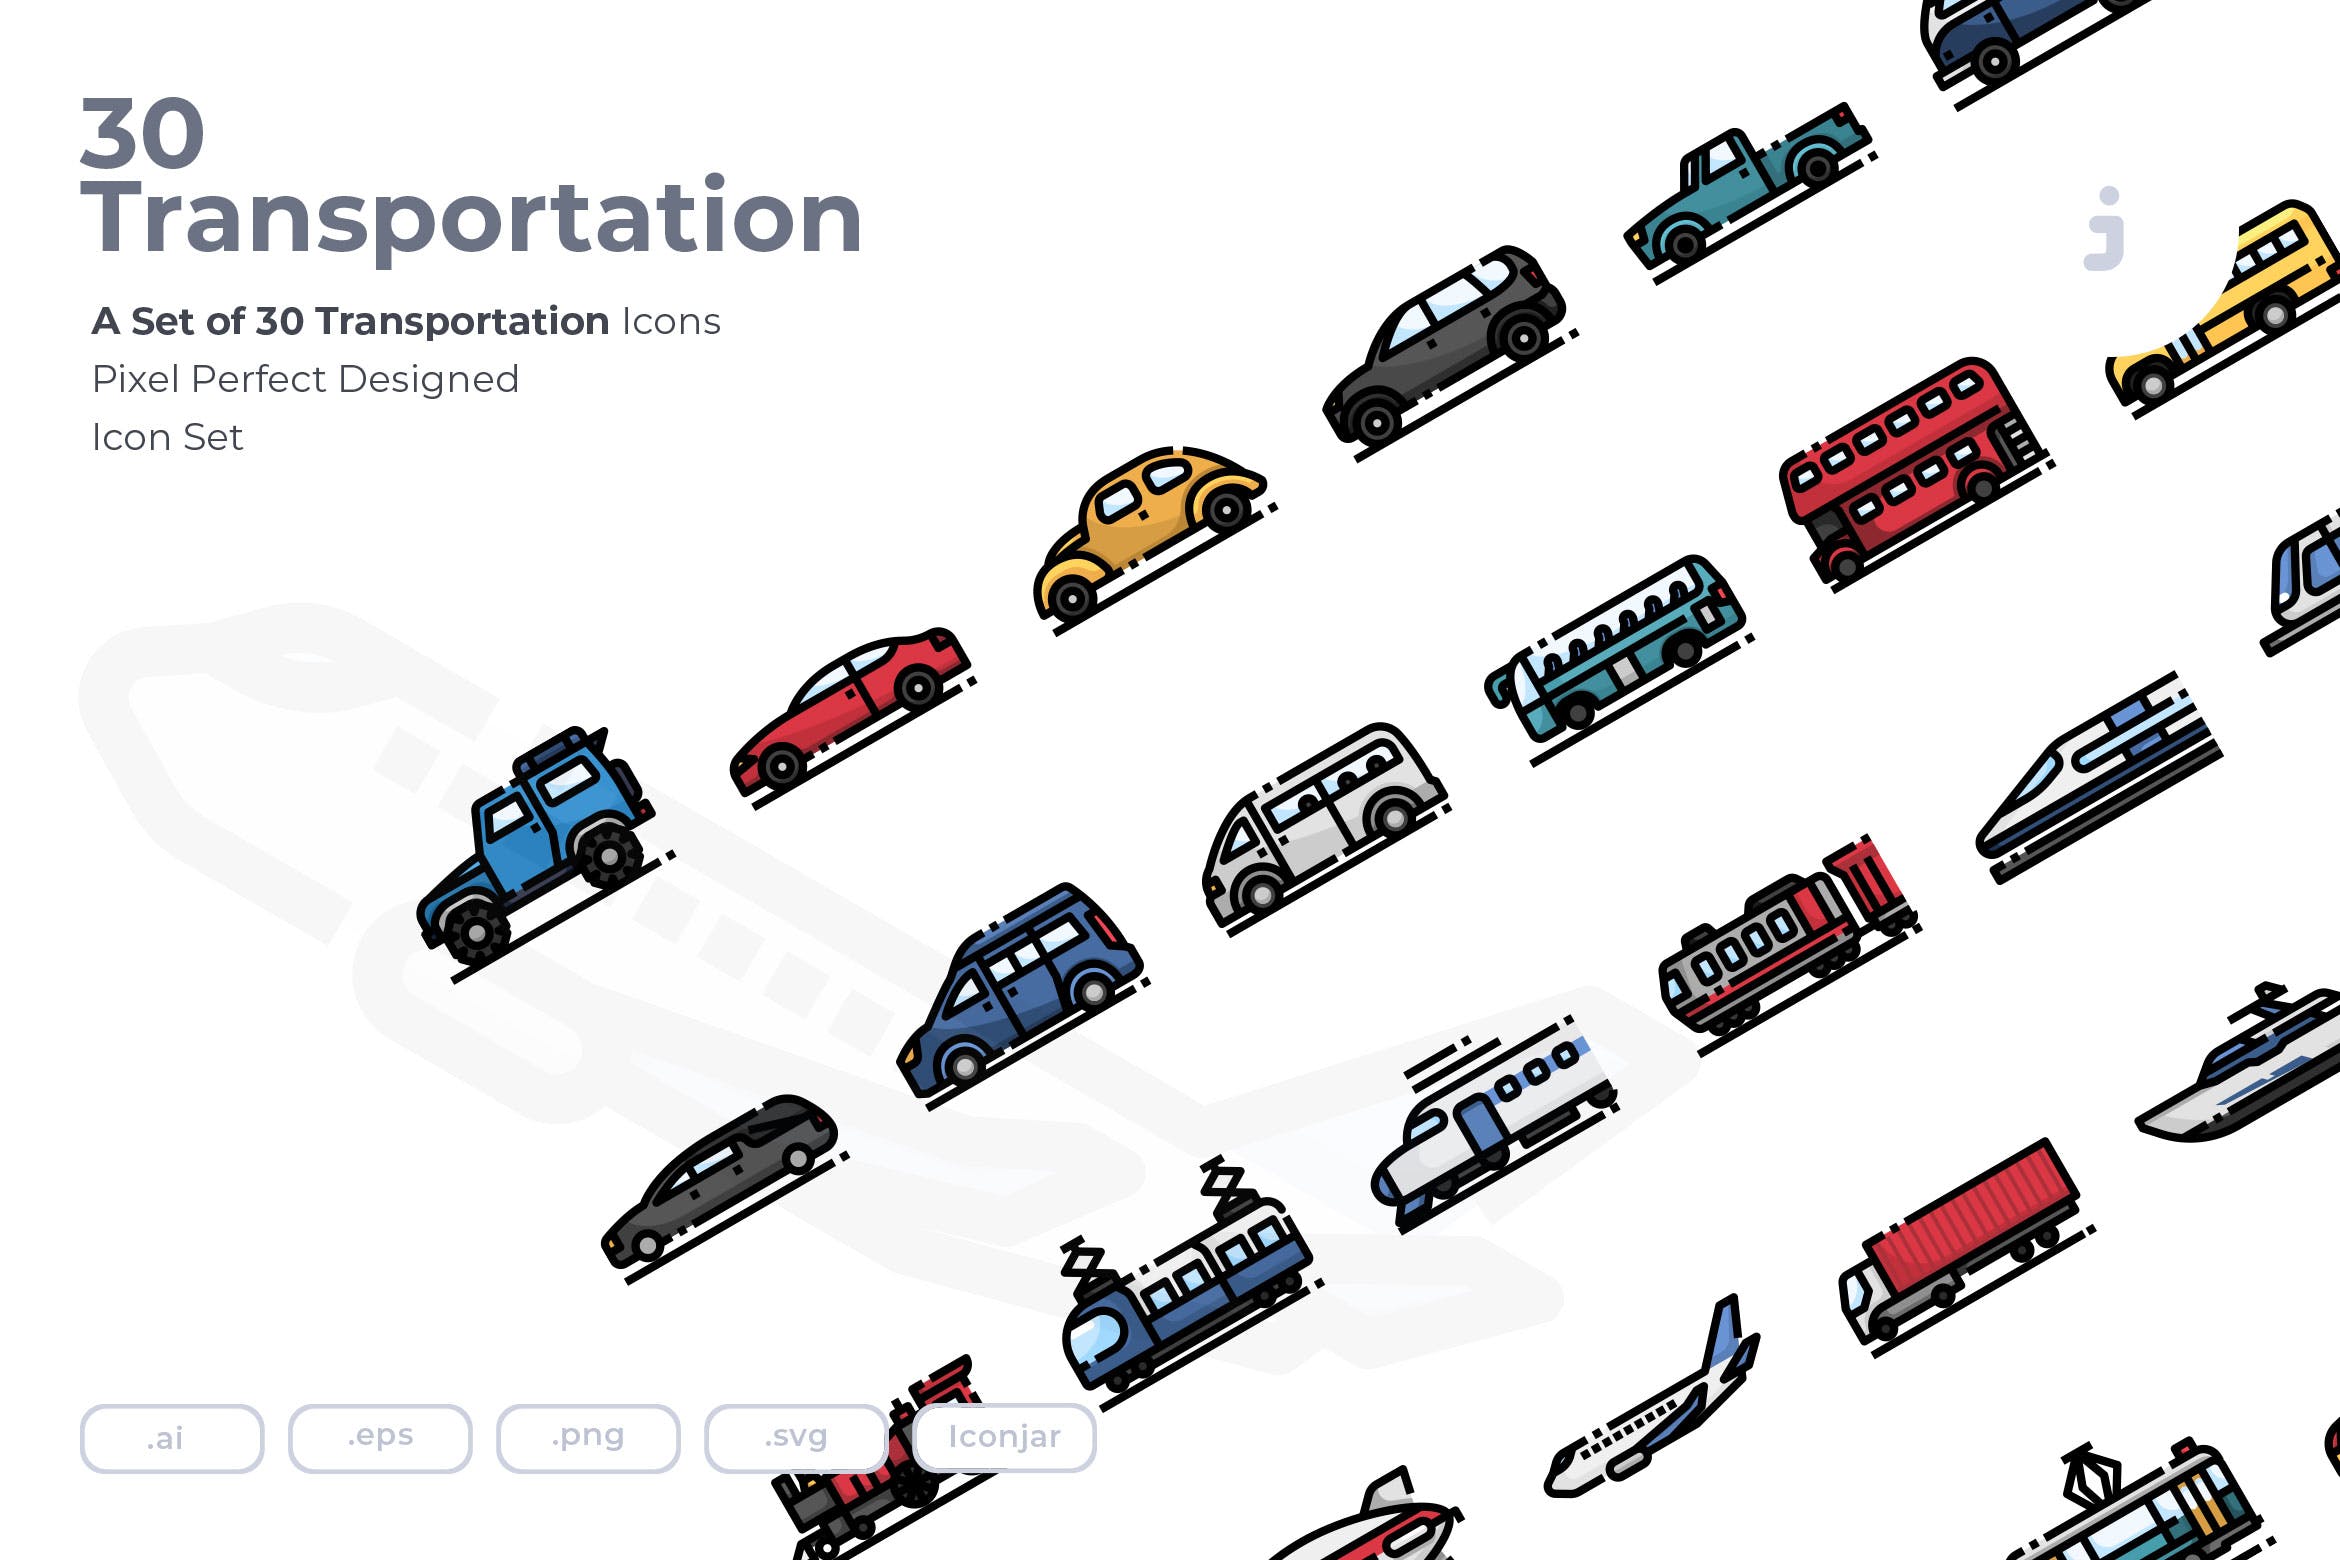 30枚现代交通工具矢量素材库精选图标 30 Transportation Icons插图